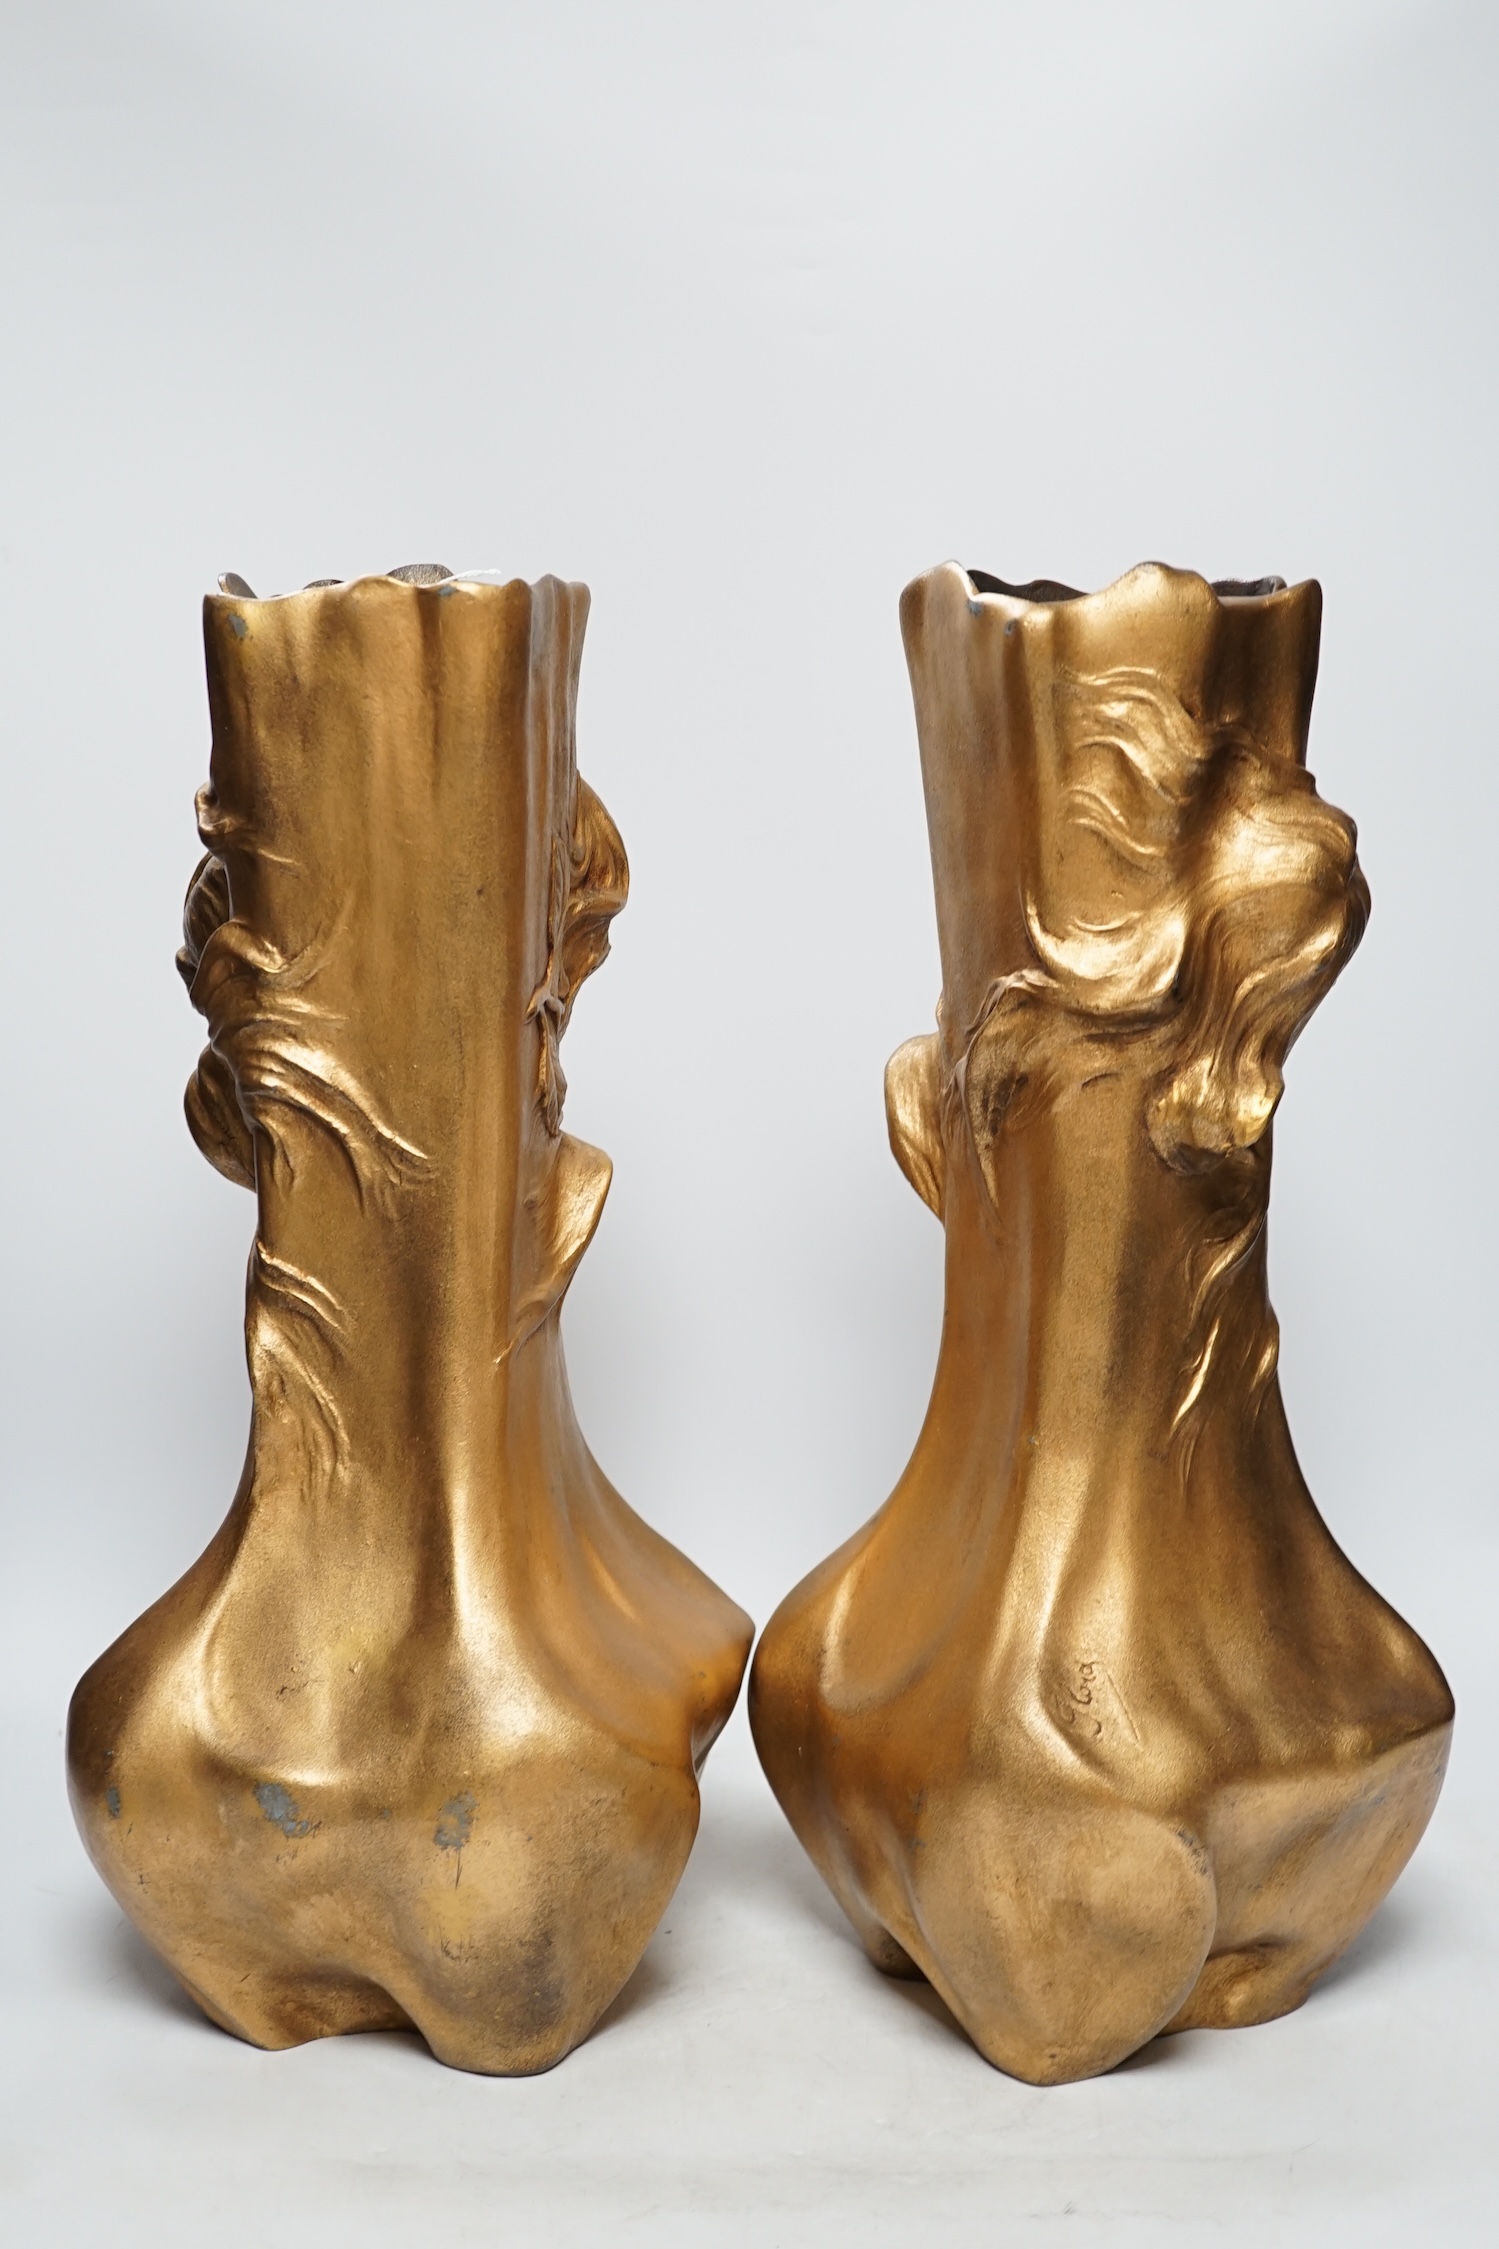 A pair of Art Nouveau figural gilt metal vases, 42cm high